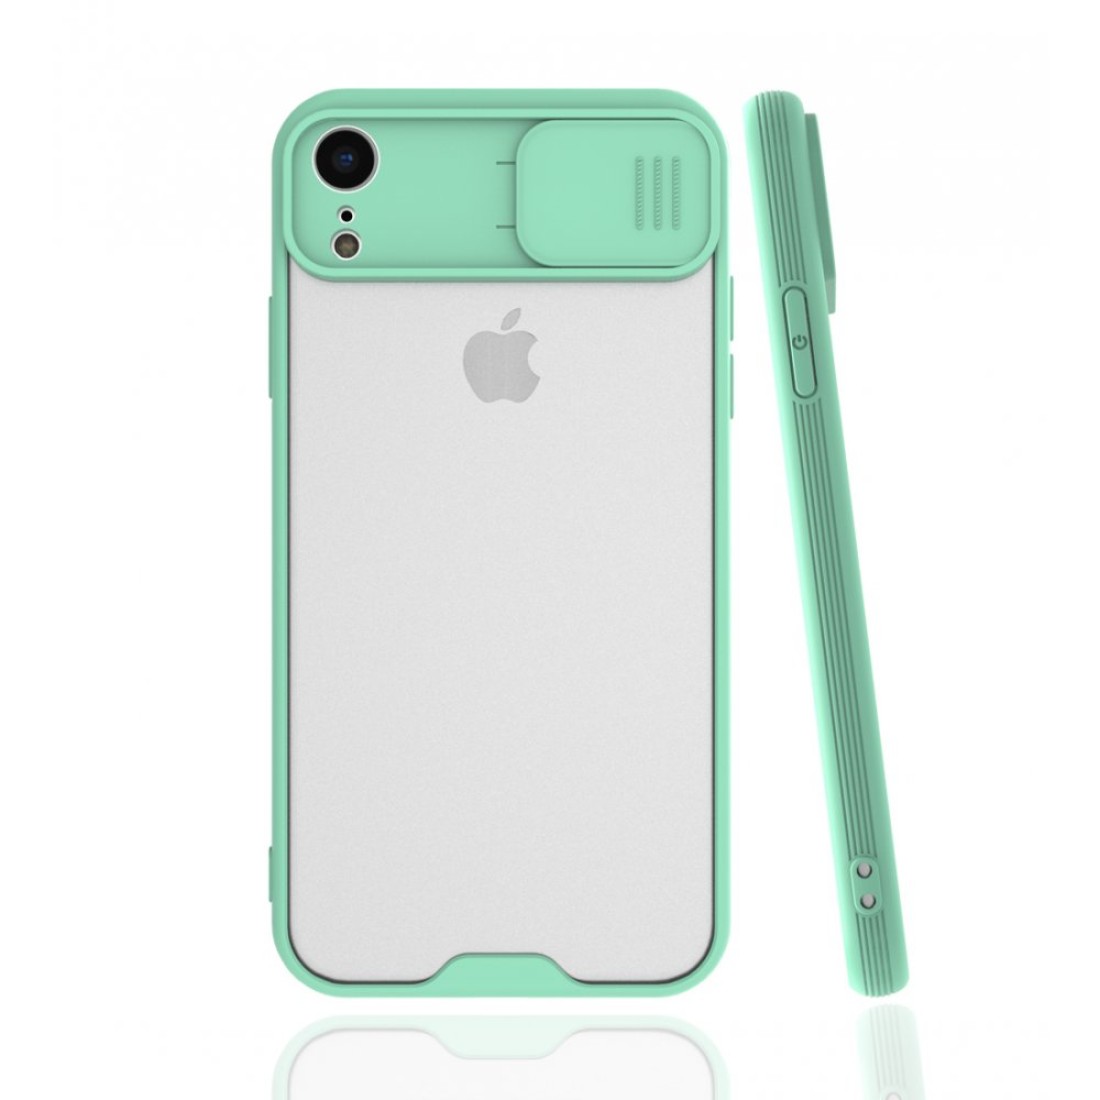 Apple iPhone XR Kılıf Platin Kamera Koruma Silikon - Açık Yeşil